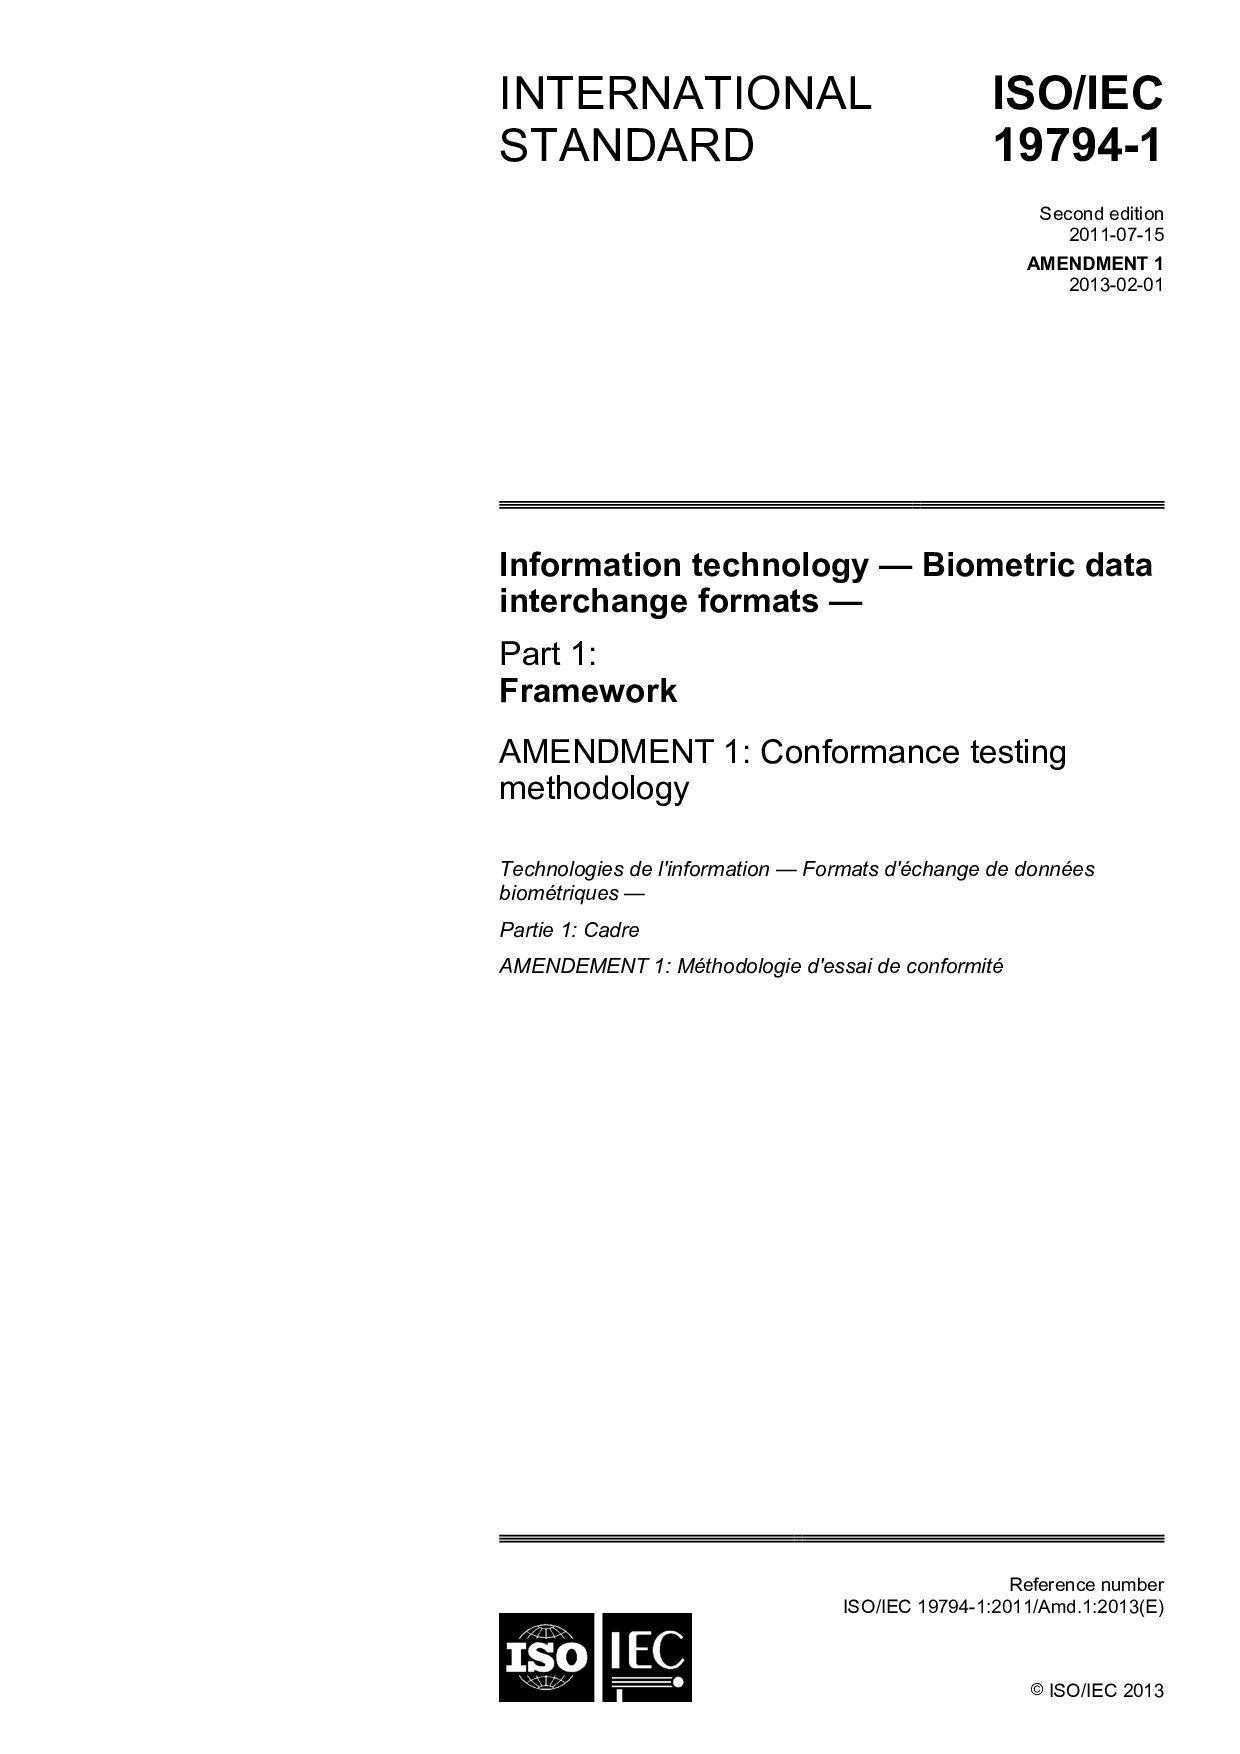 ISO/IEC 19794-1:2011/Amd 1:2013